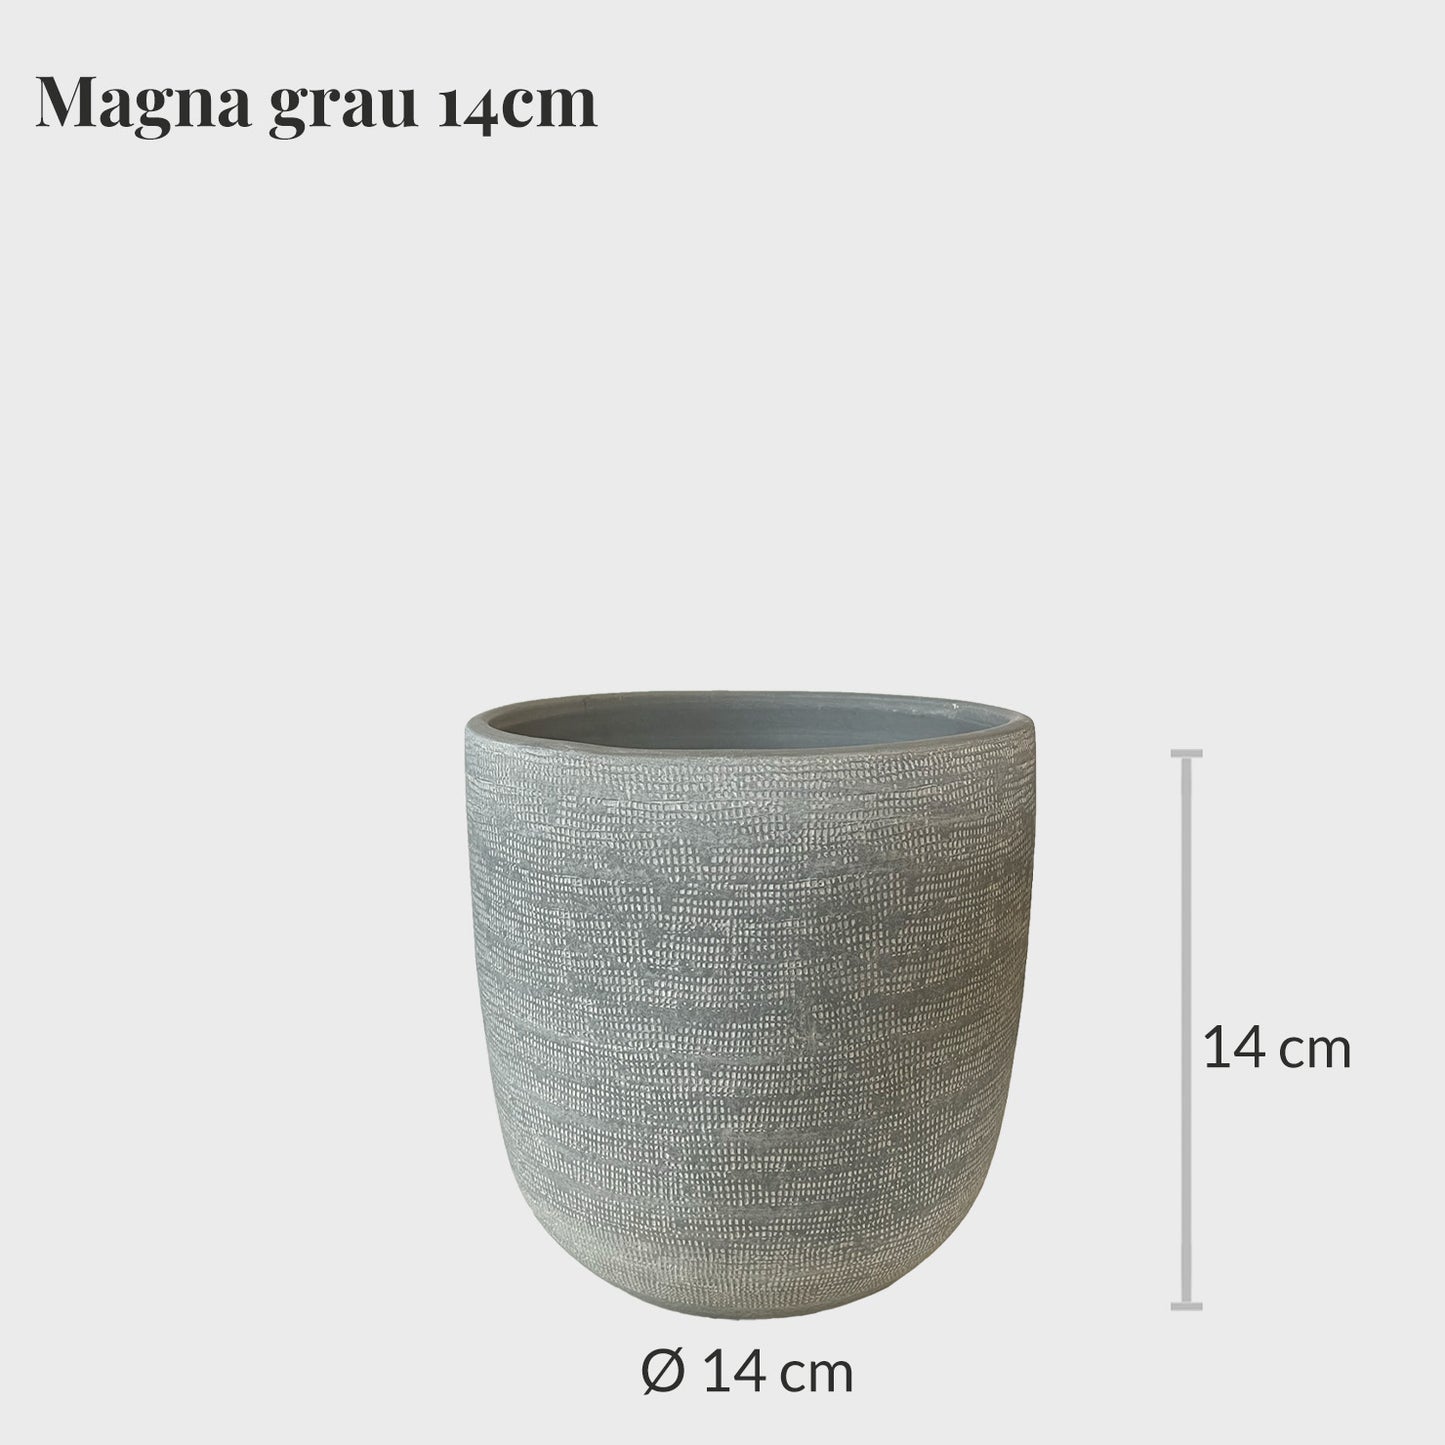 Magna 14cm